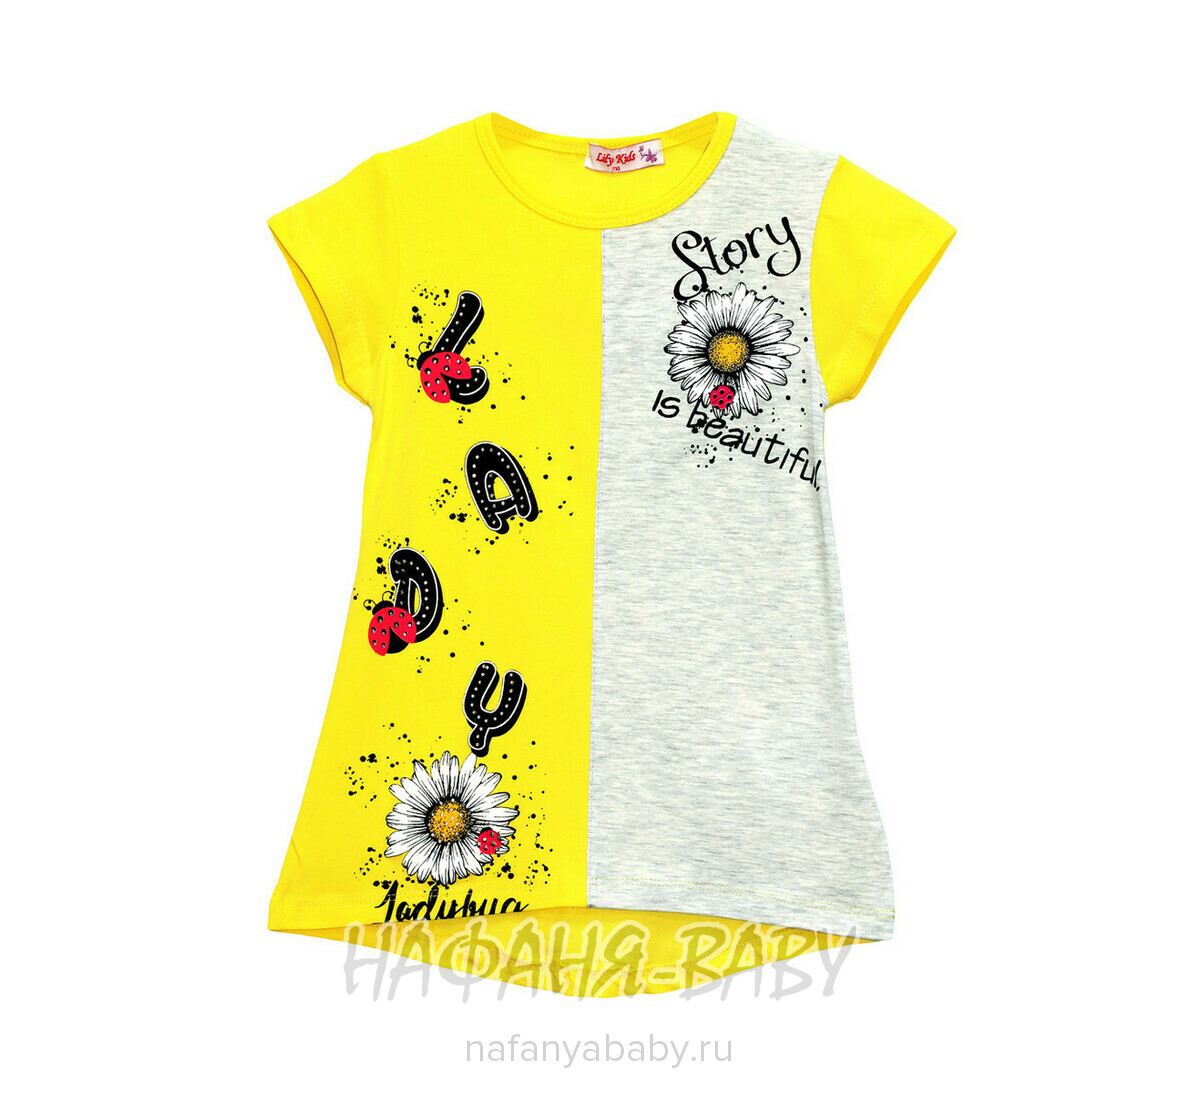 Детская туника для девочки РОМАШКИ  LILY Kids, купить в интернет магазине Нафаня. арт: 3614.